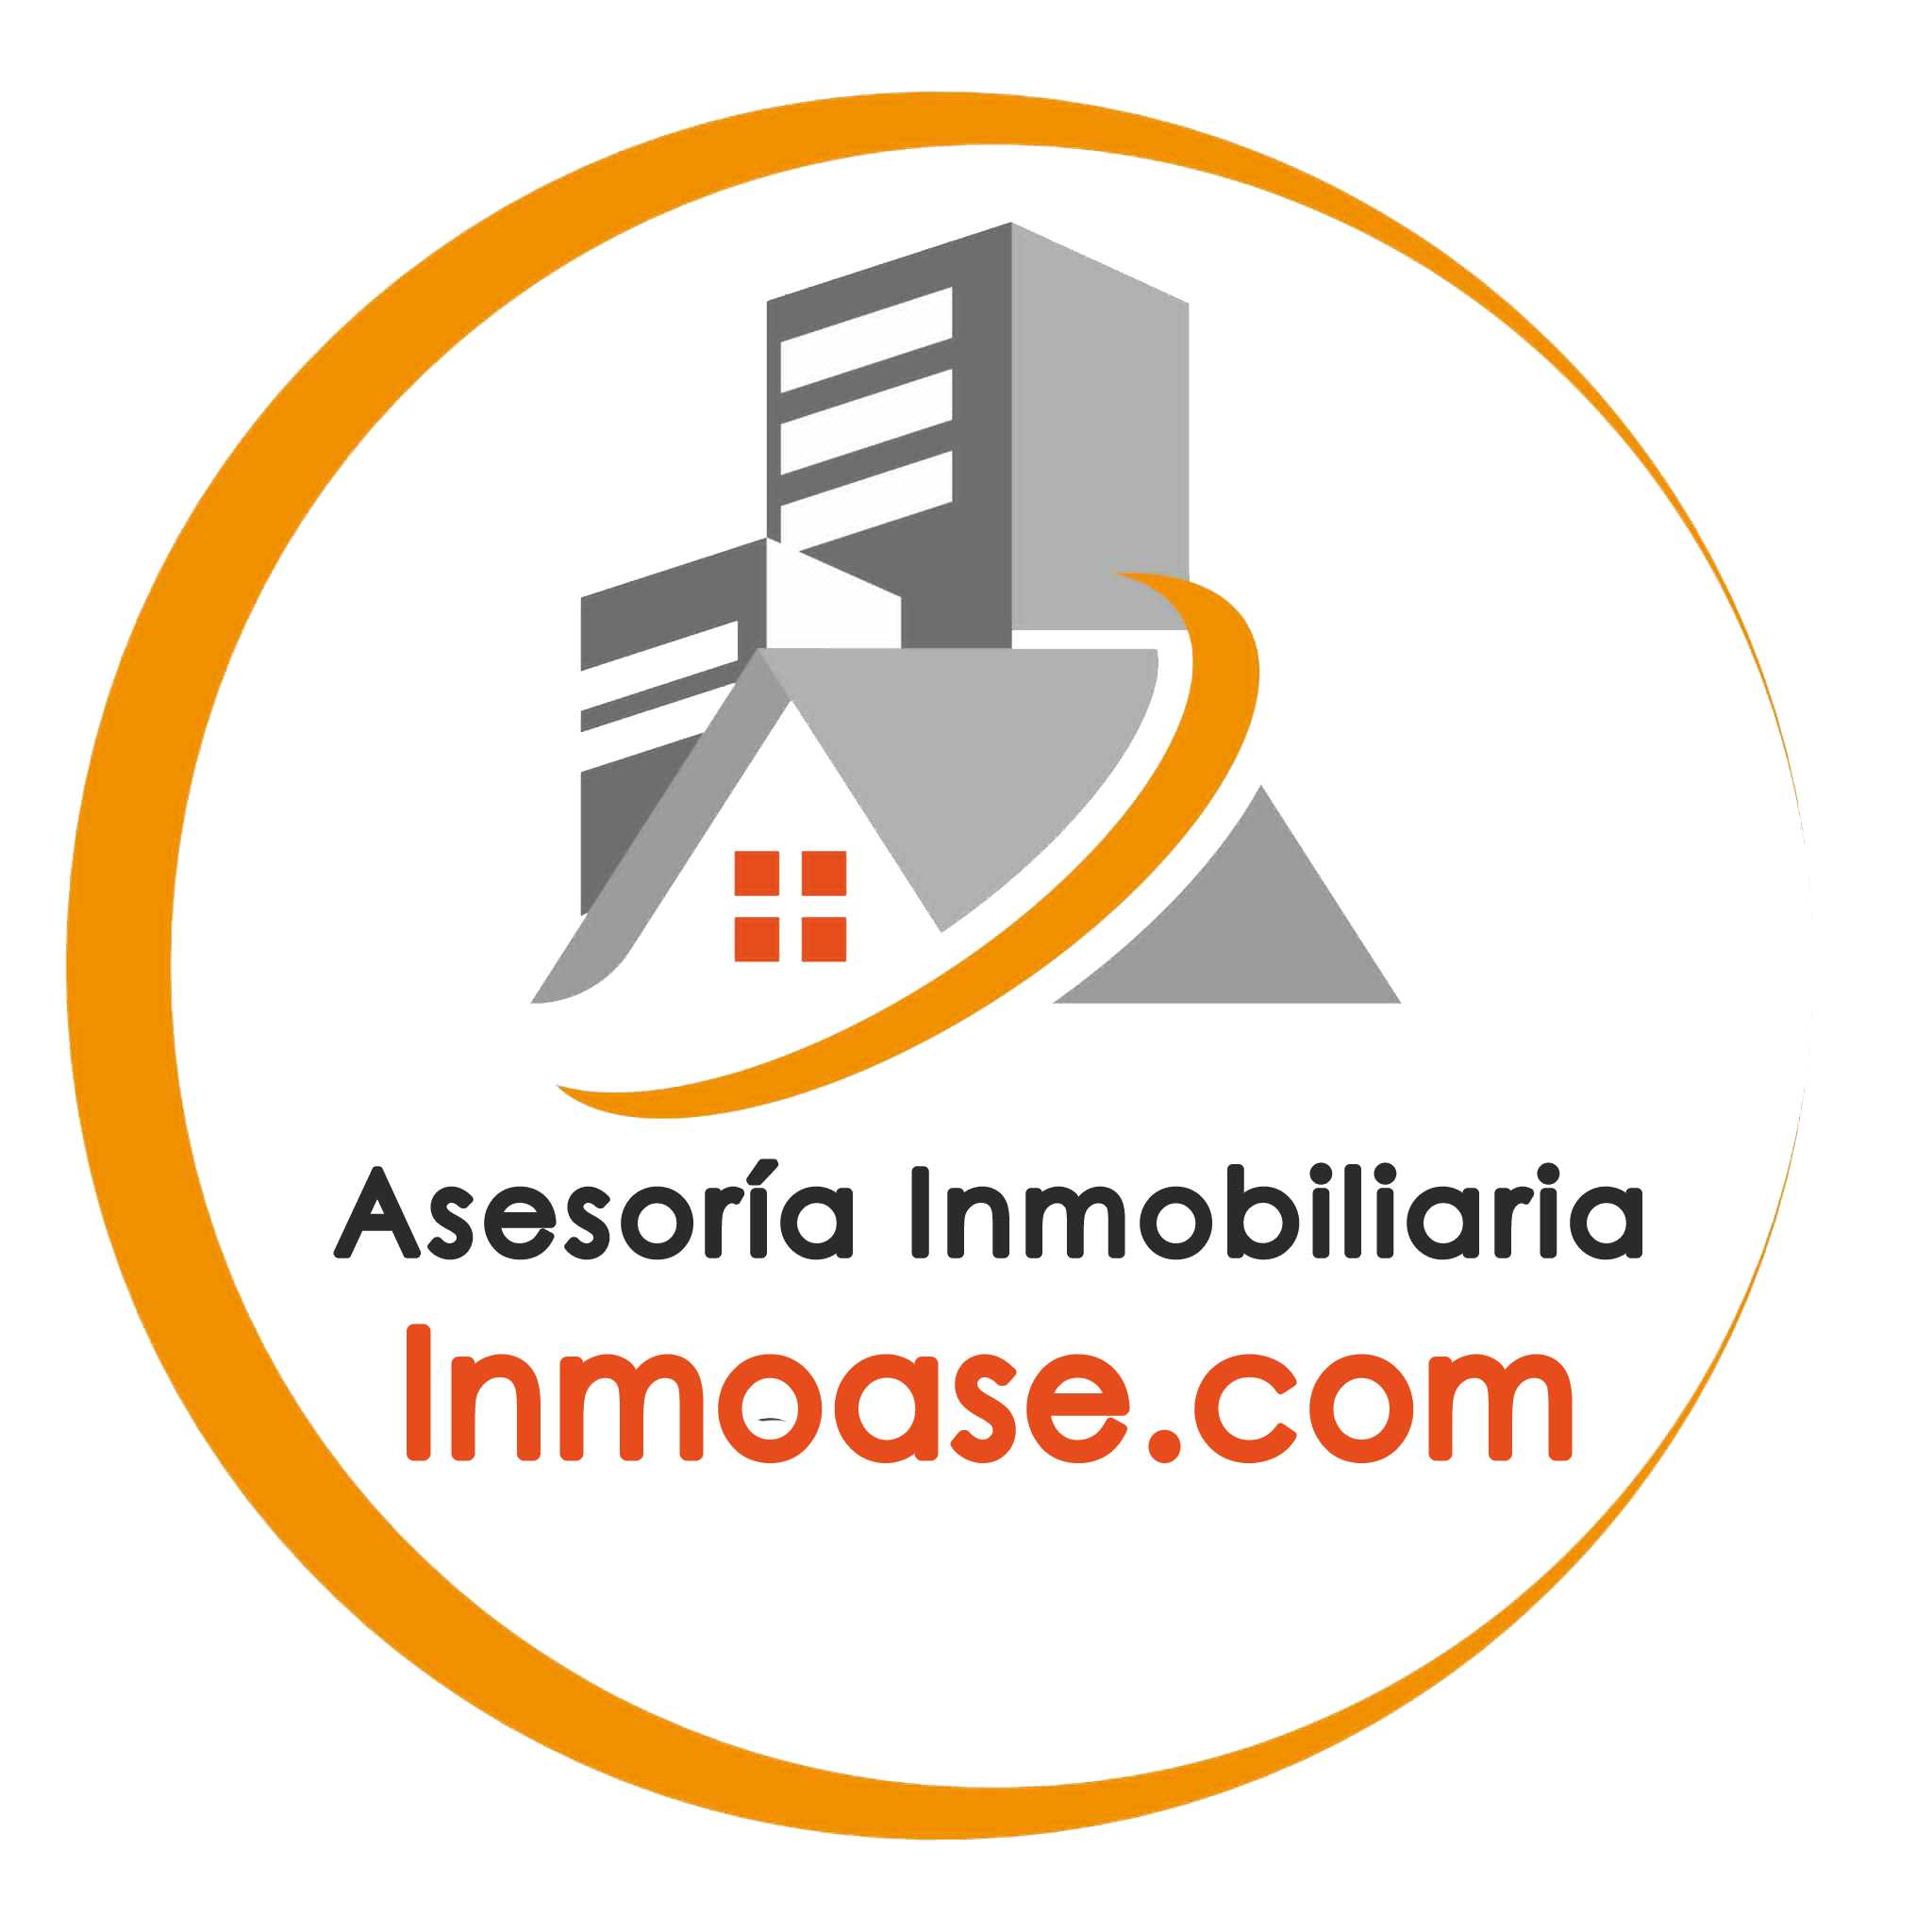 Inmobiliaria En Mallorca -inmoase - Asesoría Inmobiliaria Logo